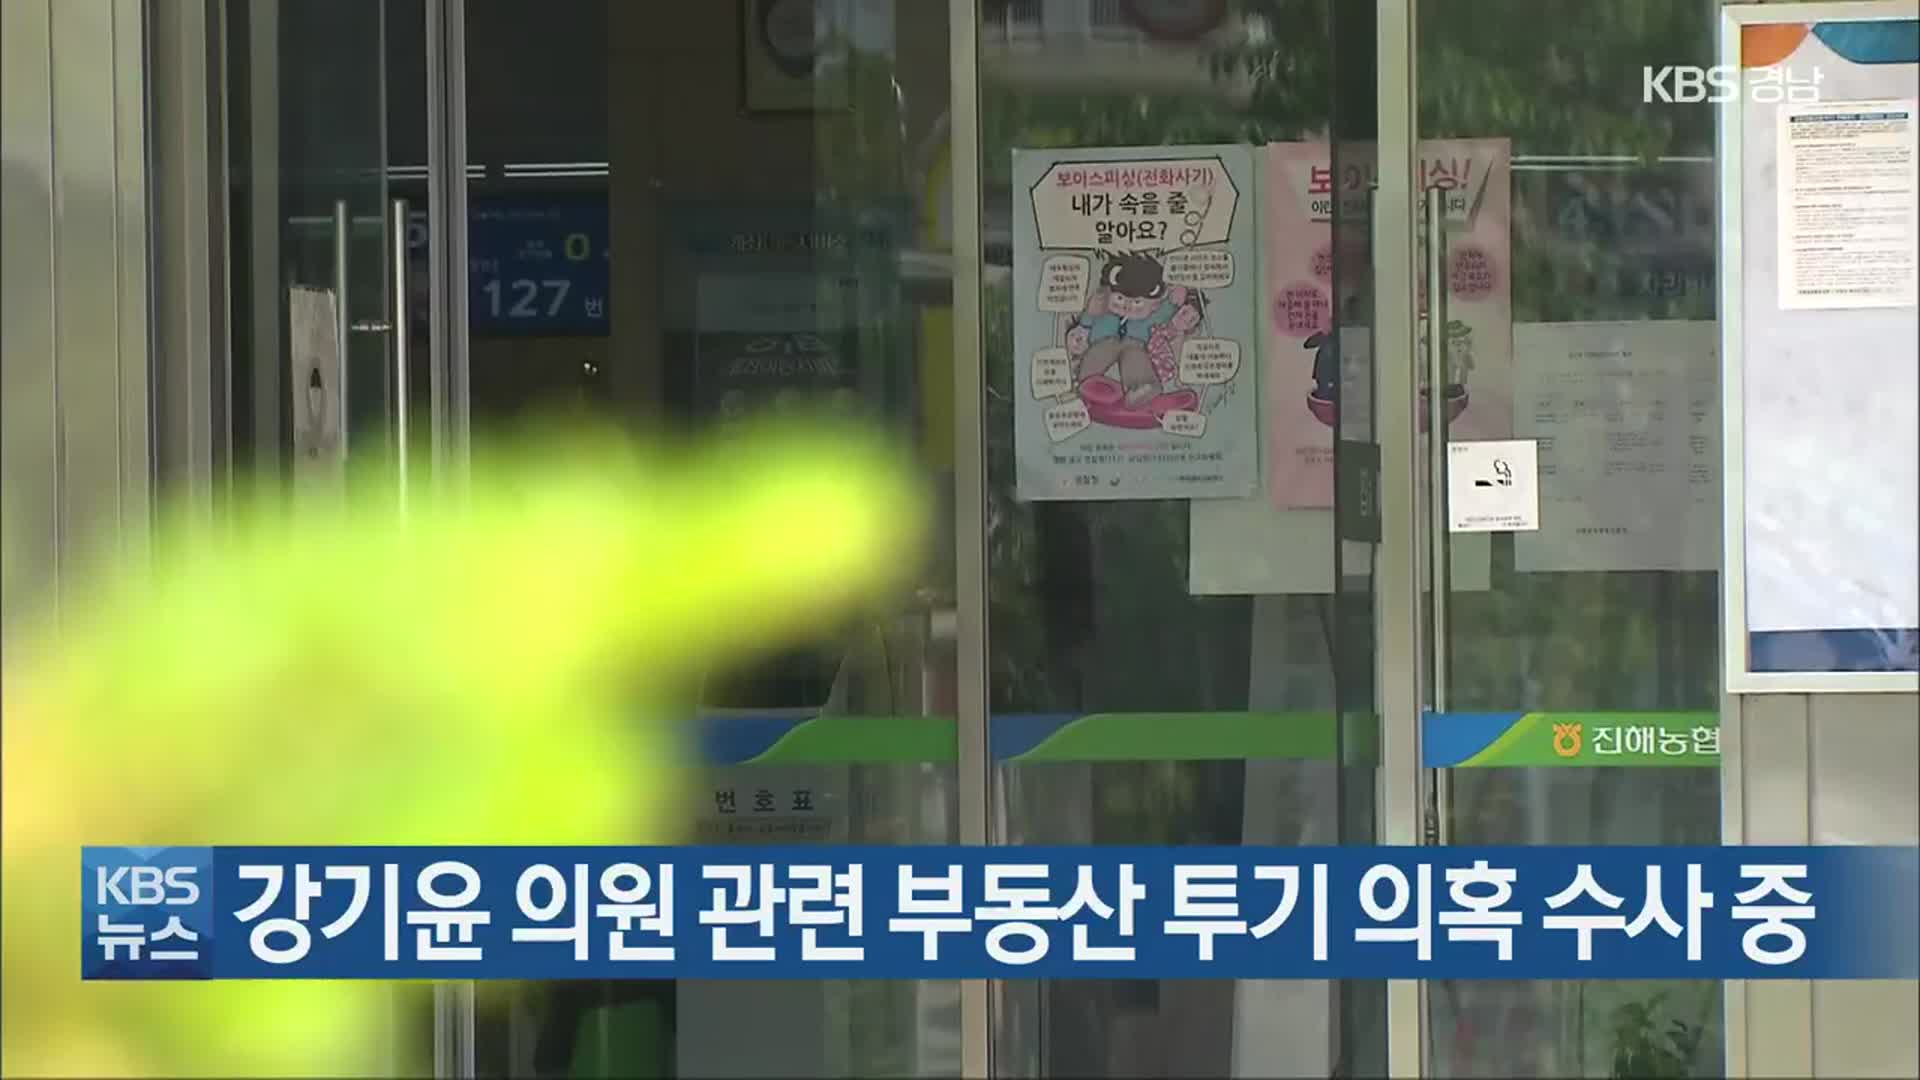 [반론보도문] 강기윤 의원 관련 부동산 투기 의혹 수사 중